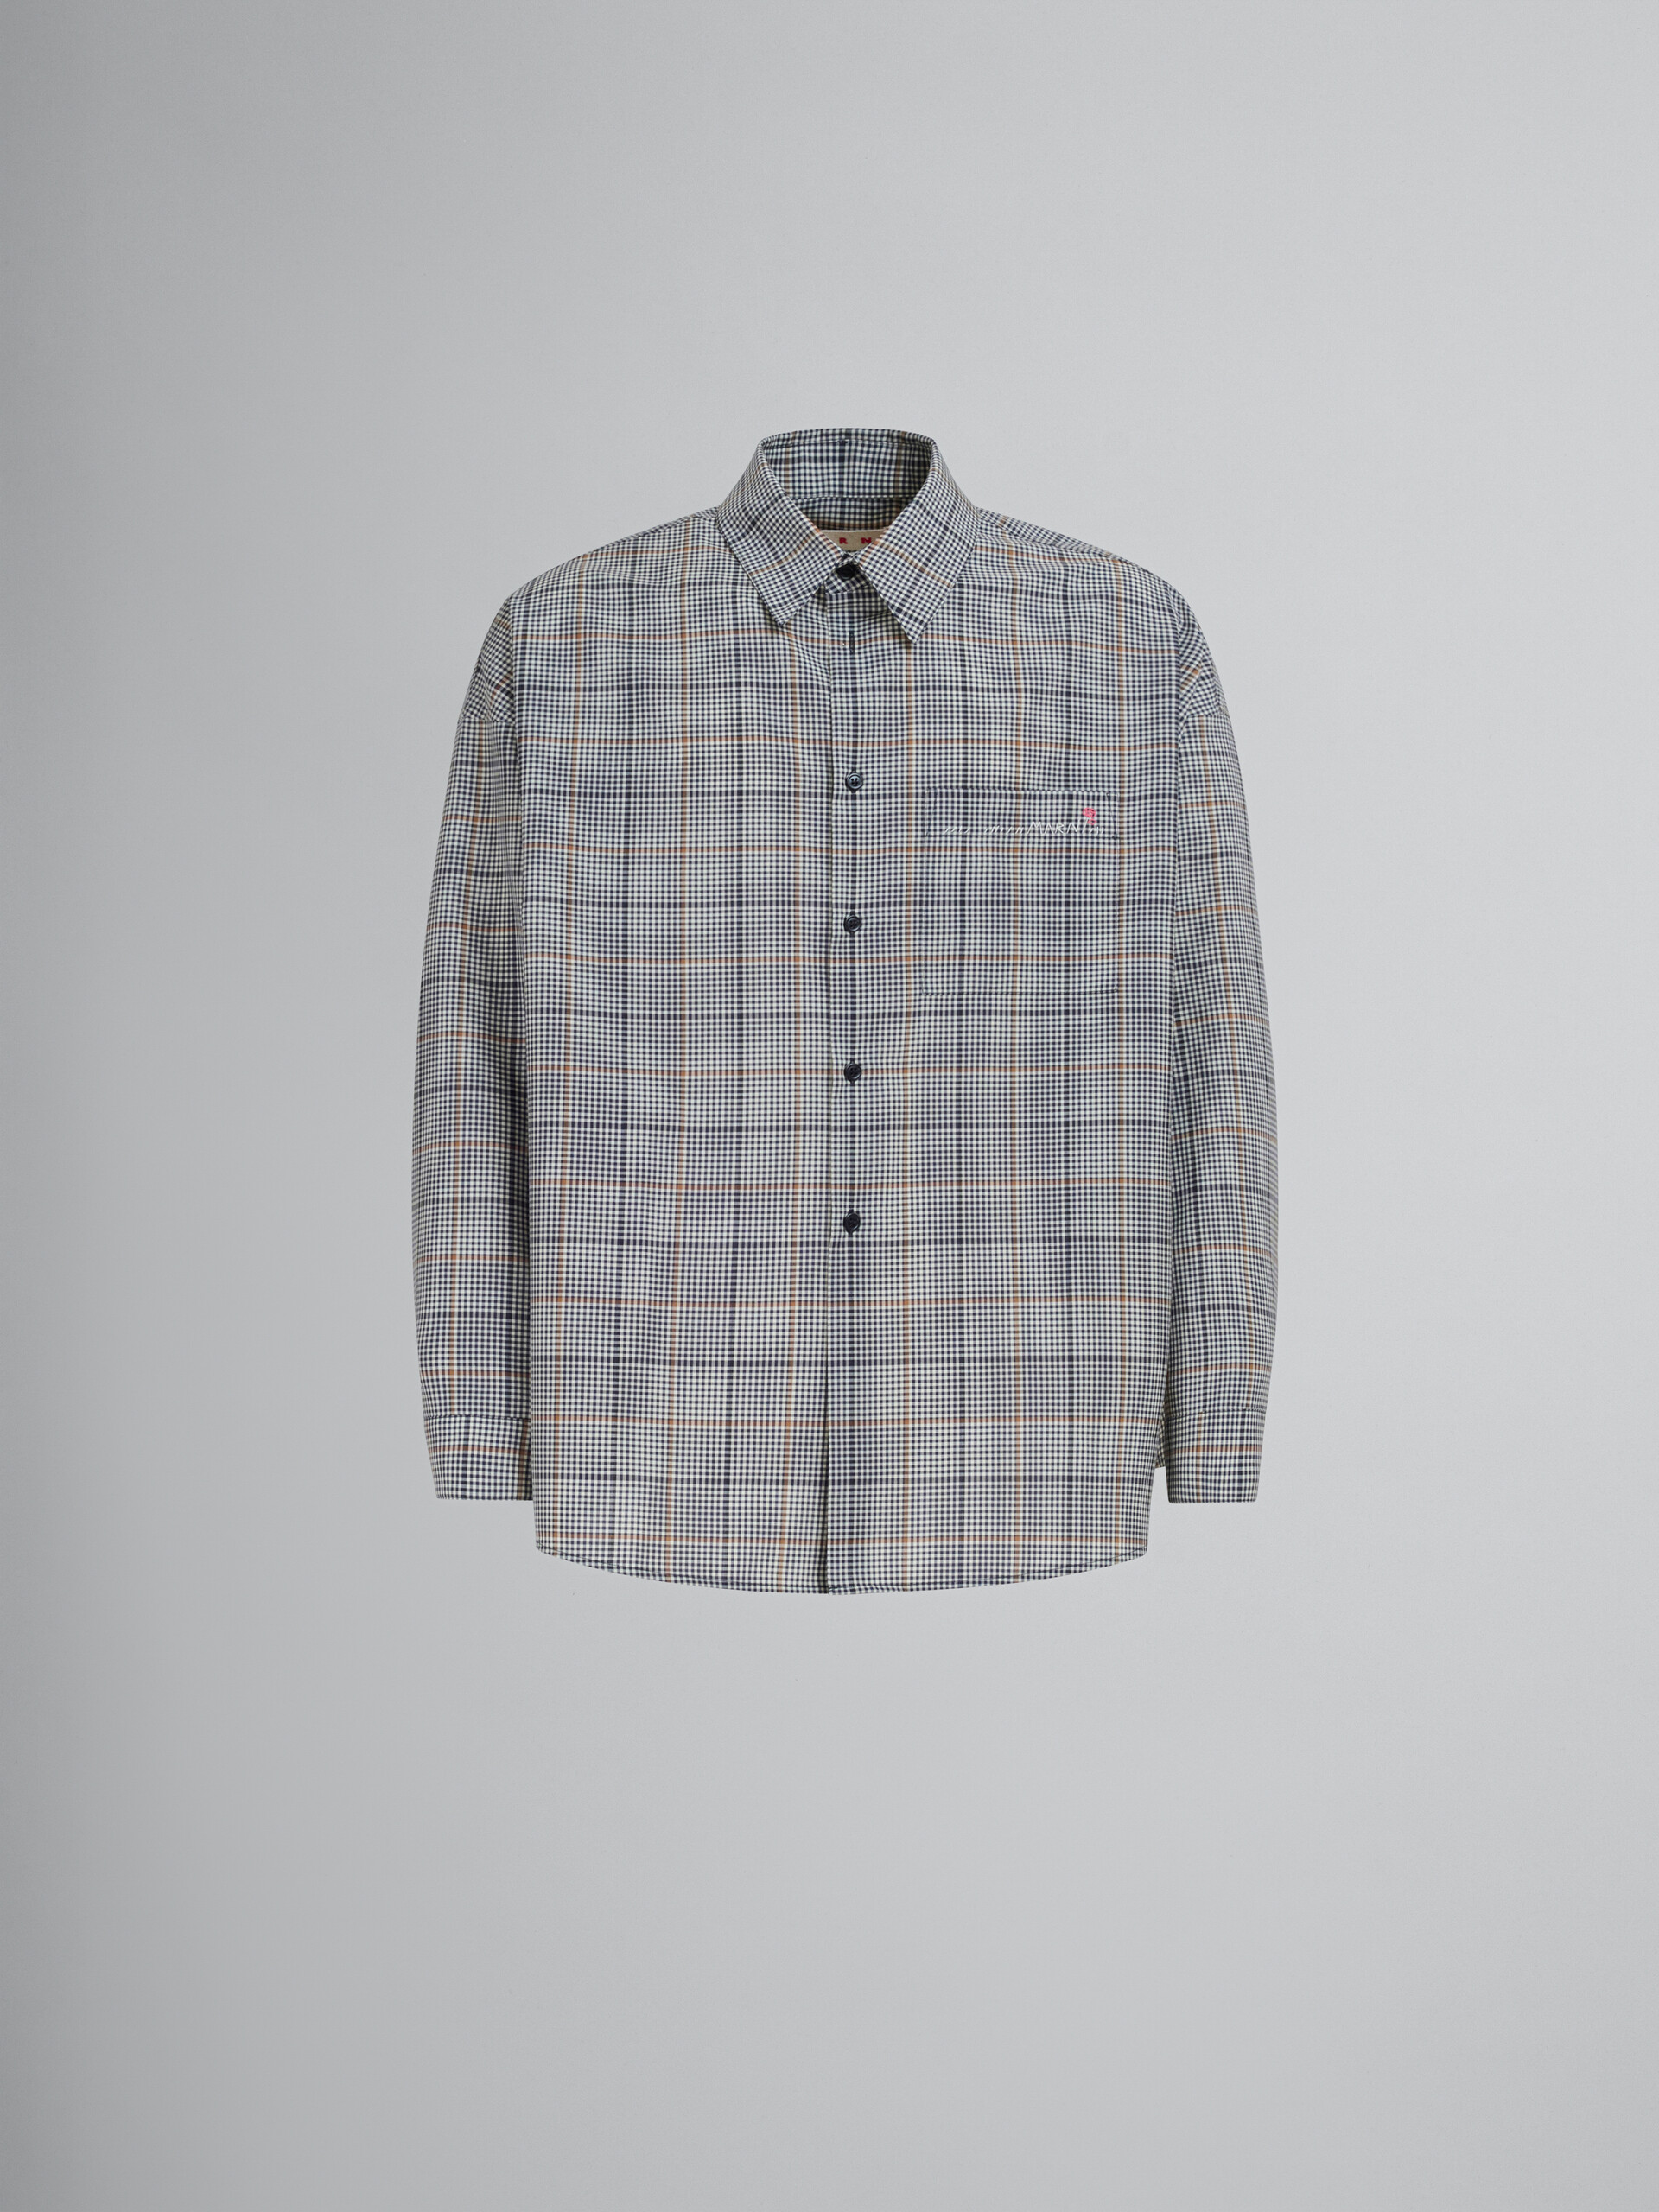 Camicia in lana tecnica check blu scuro - Camicie - Image 1